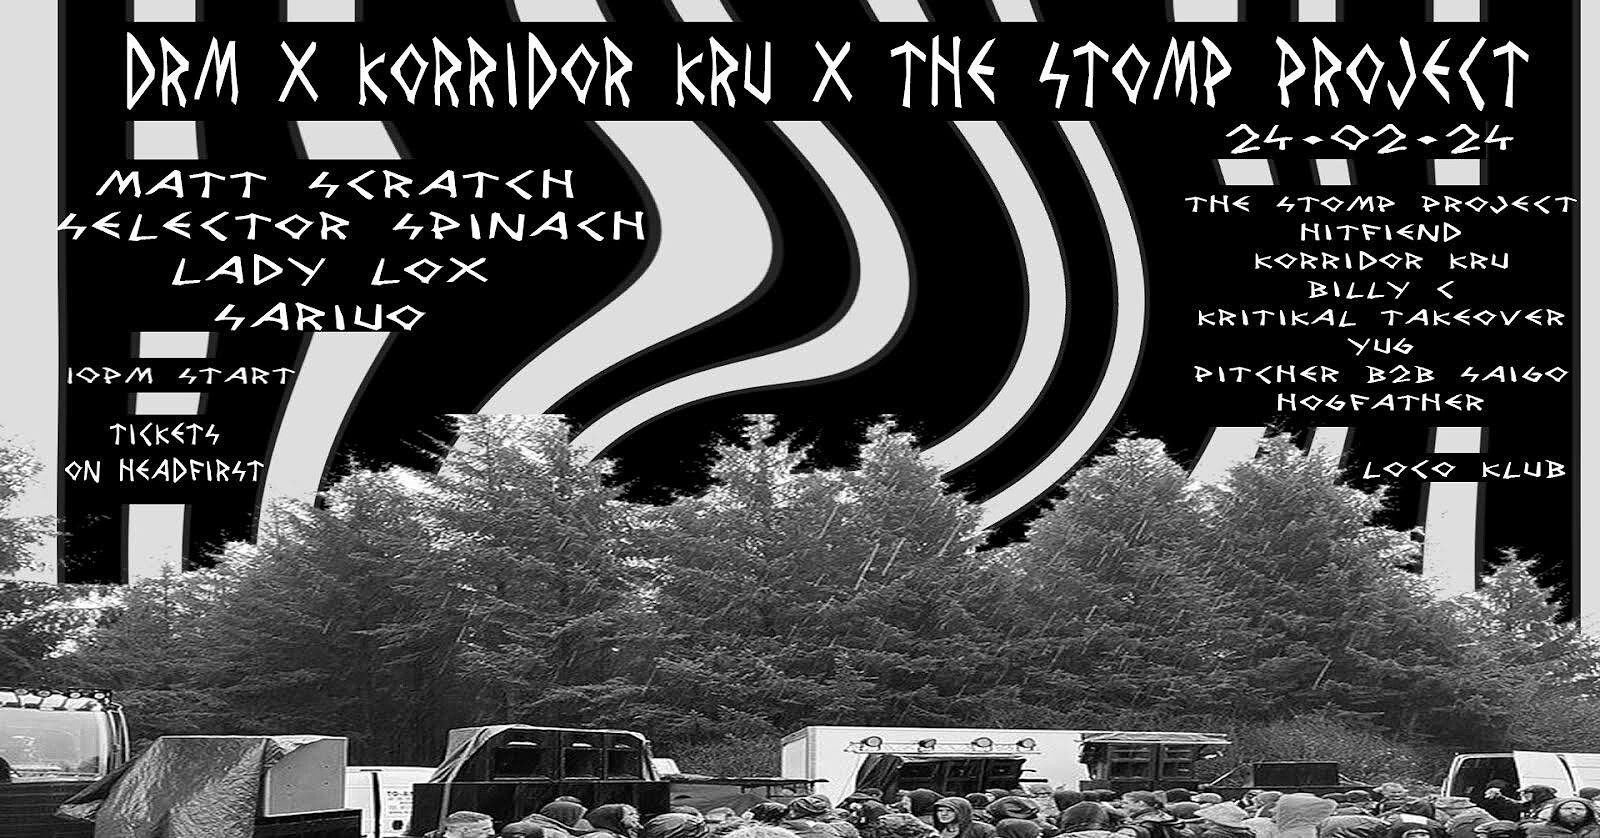 DRM x Korridor Kru x The Stomp Project at The Loco Klub